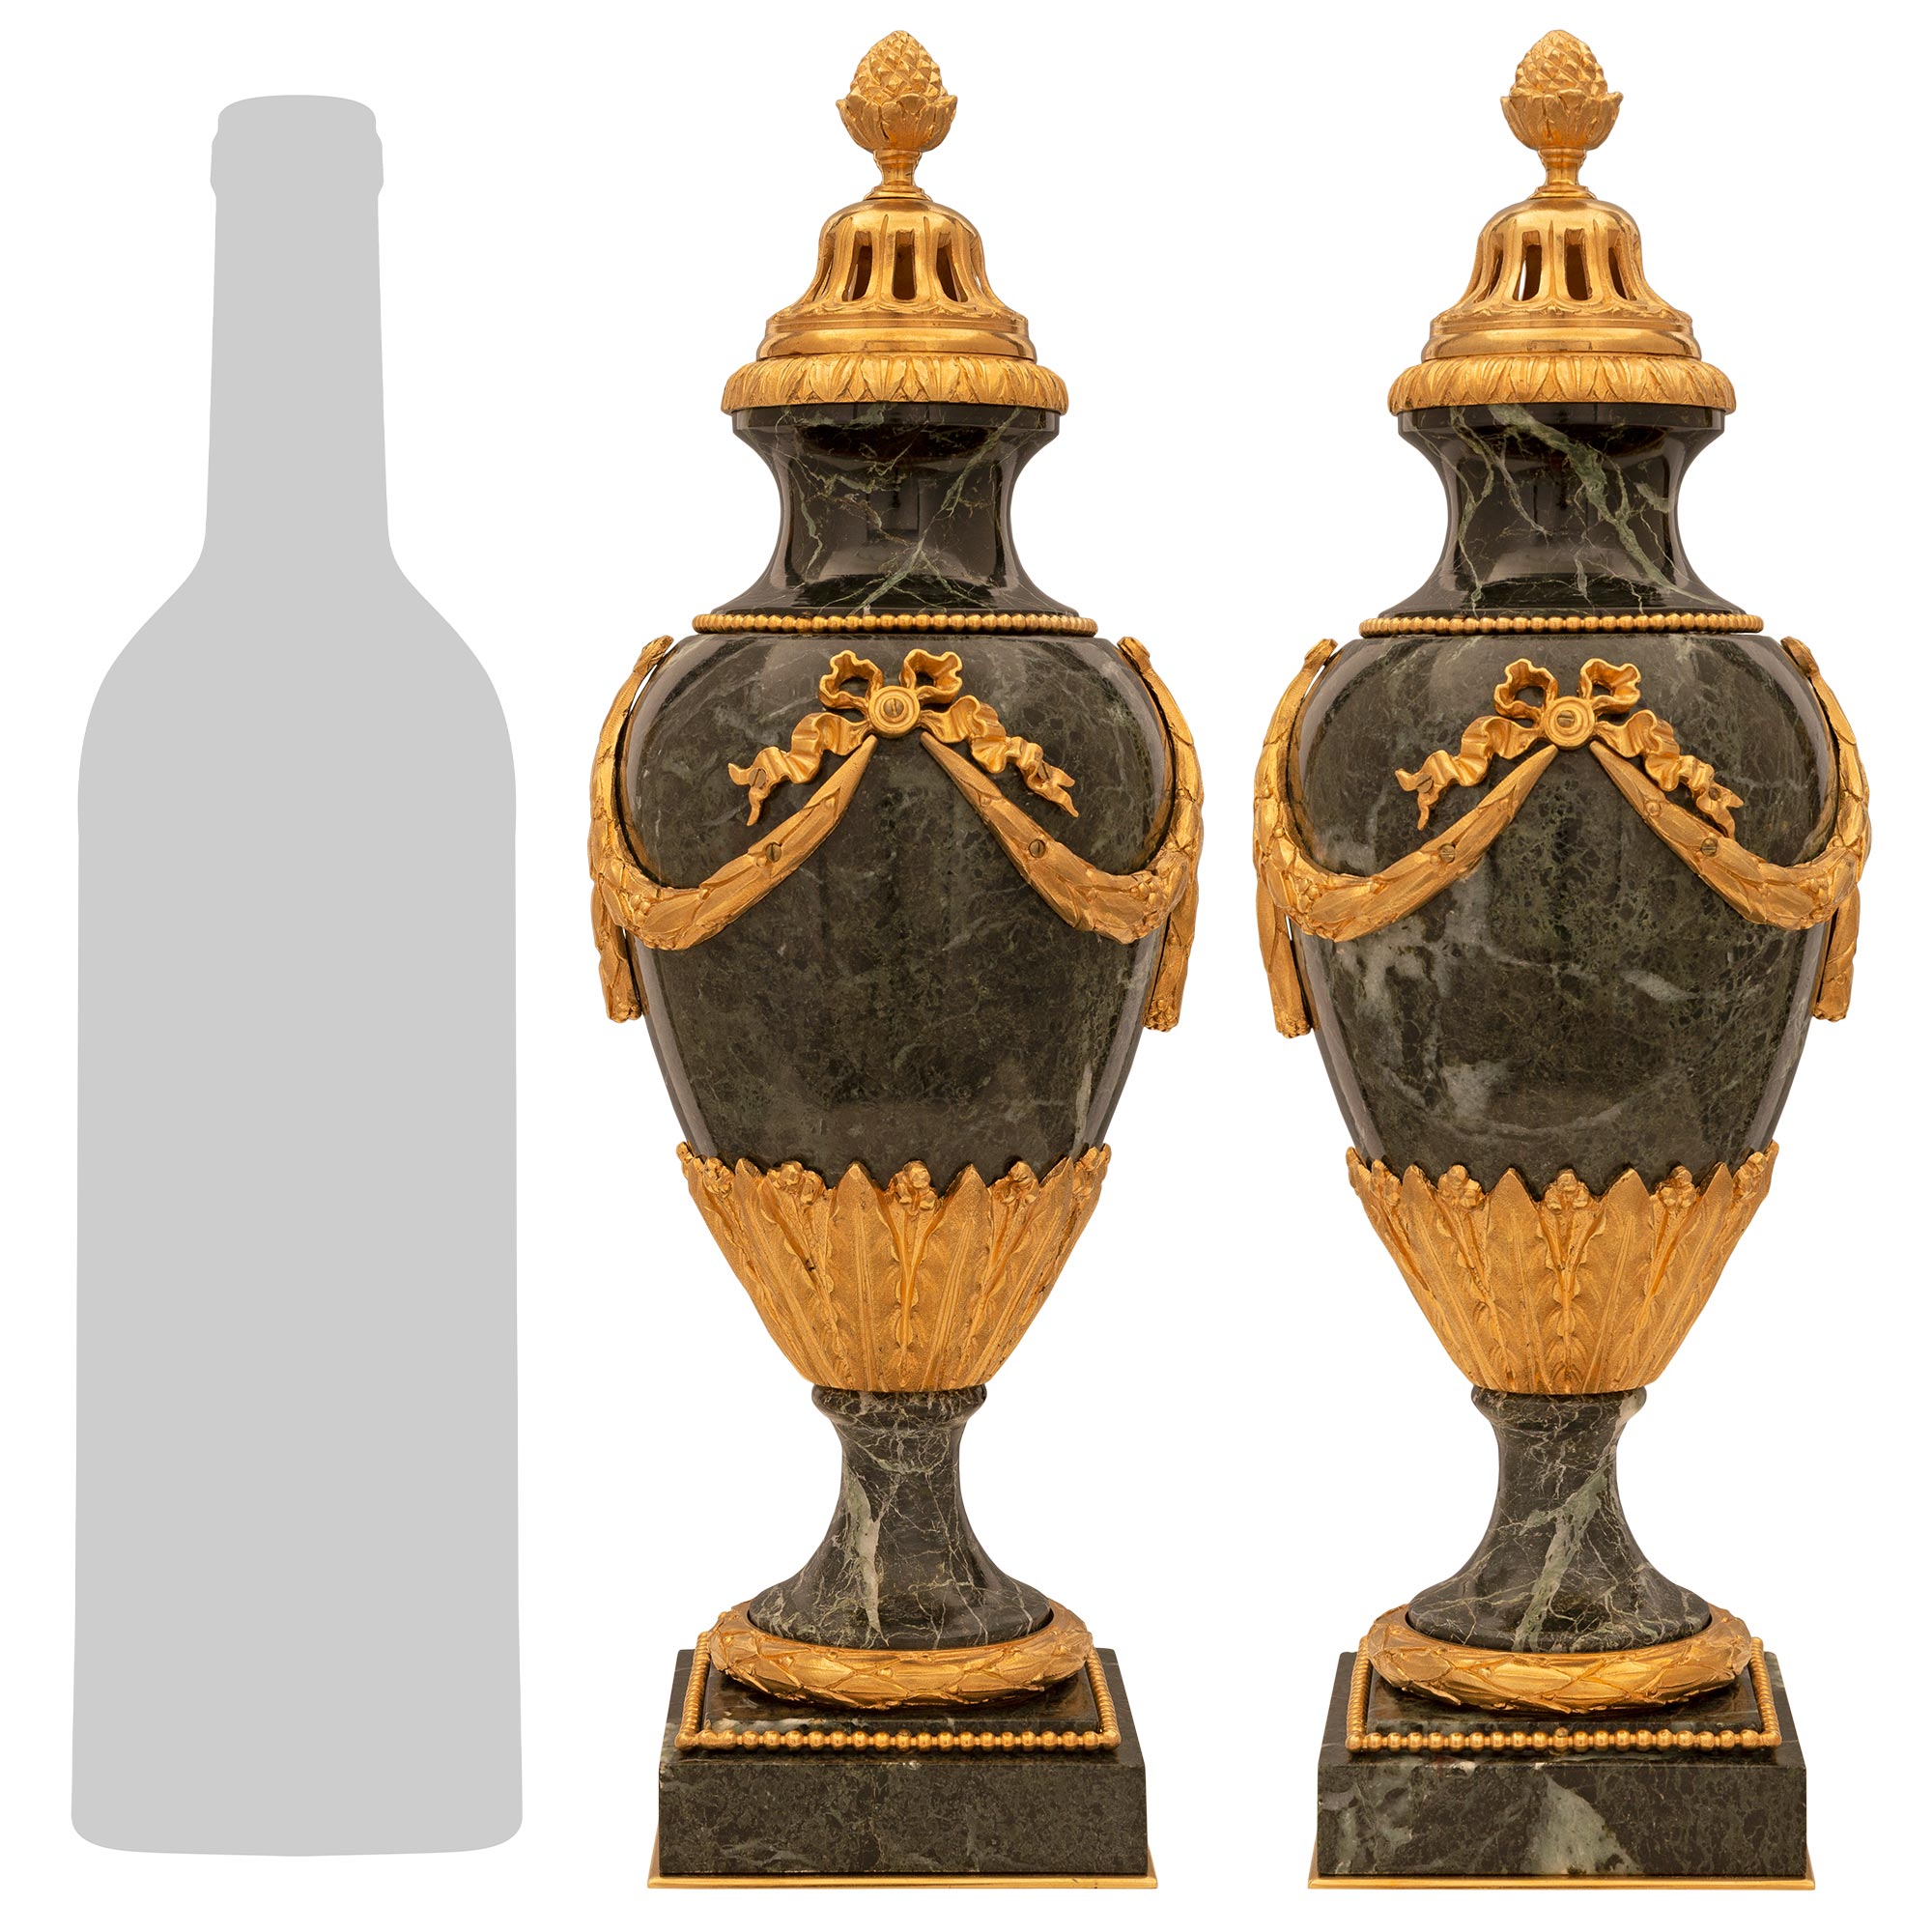 Paire d'urnes à couvercle en marbre et bronze doré de style Louis XVI du XIXe siècle français